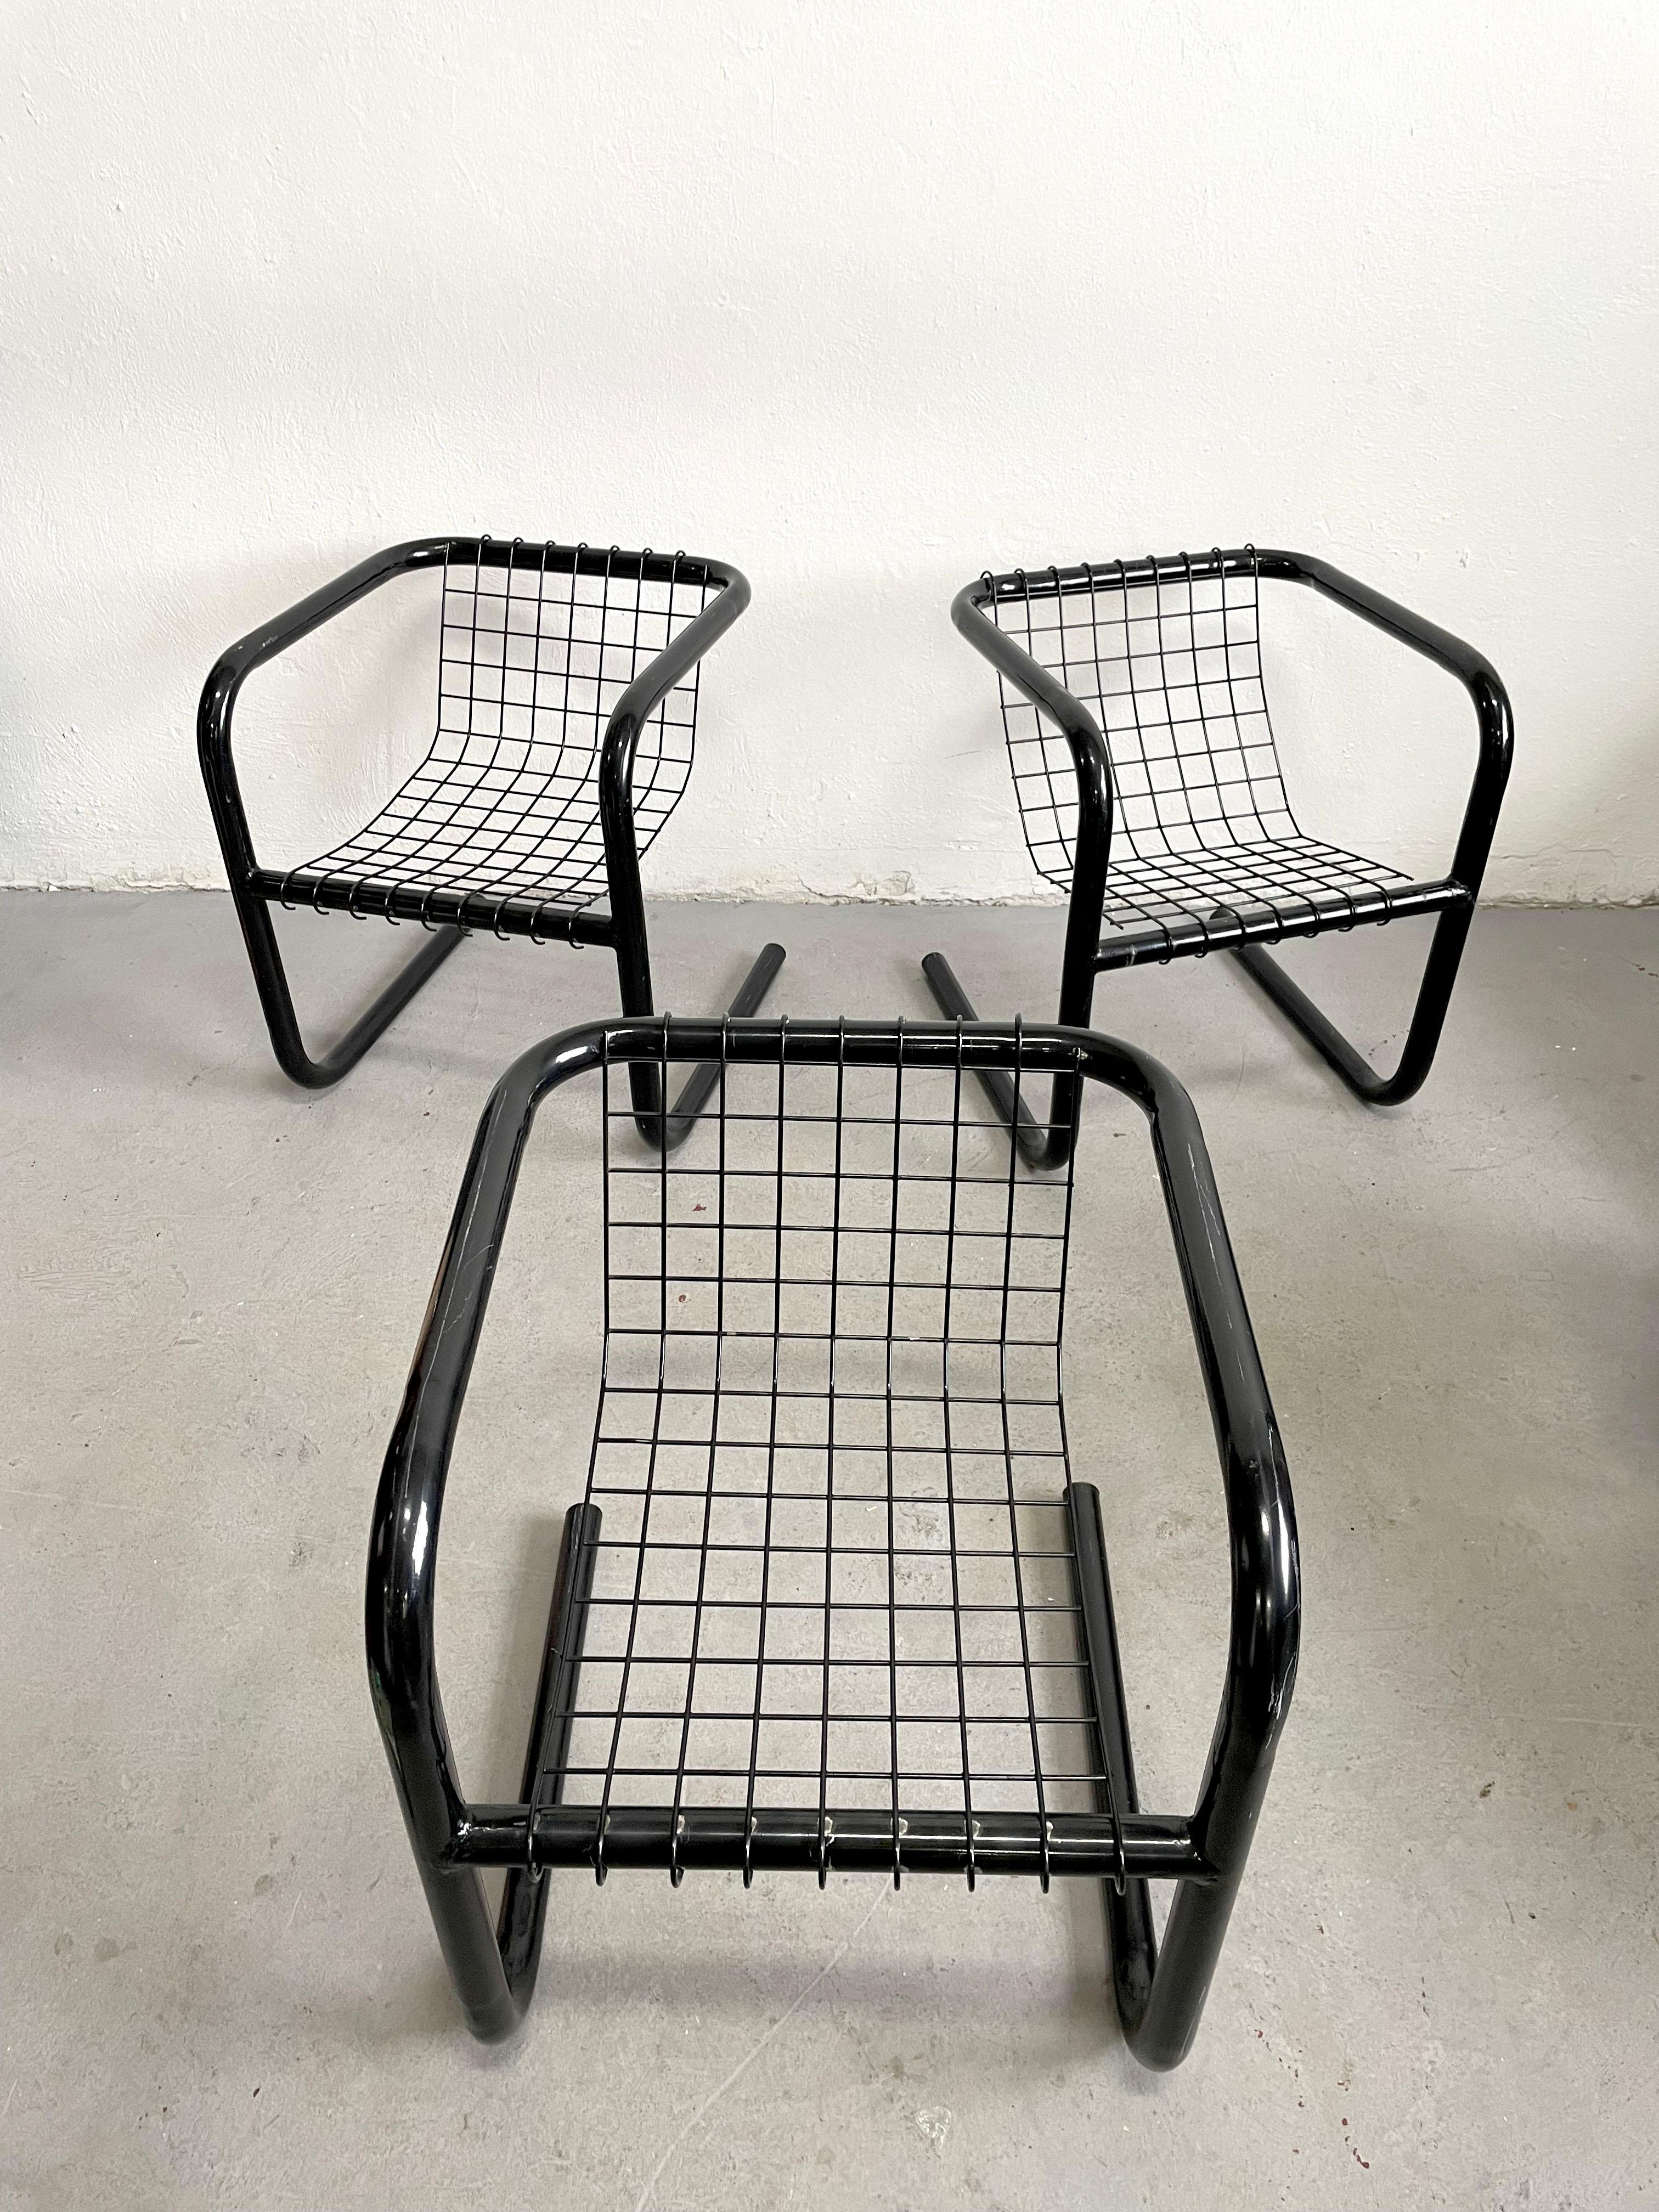 Chaise vintage en métal peint par poudrage, de couleur noire. La partie en porte-à-faux du cadre supporte un siège amovible en treillis métallique.

Le prix est par chaise, 3 disponibles.

Design moderniste des années 1970, fabricant inconnu,